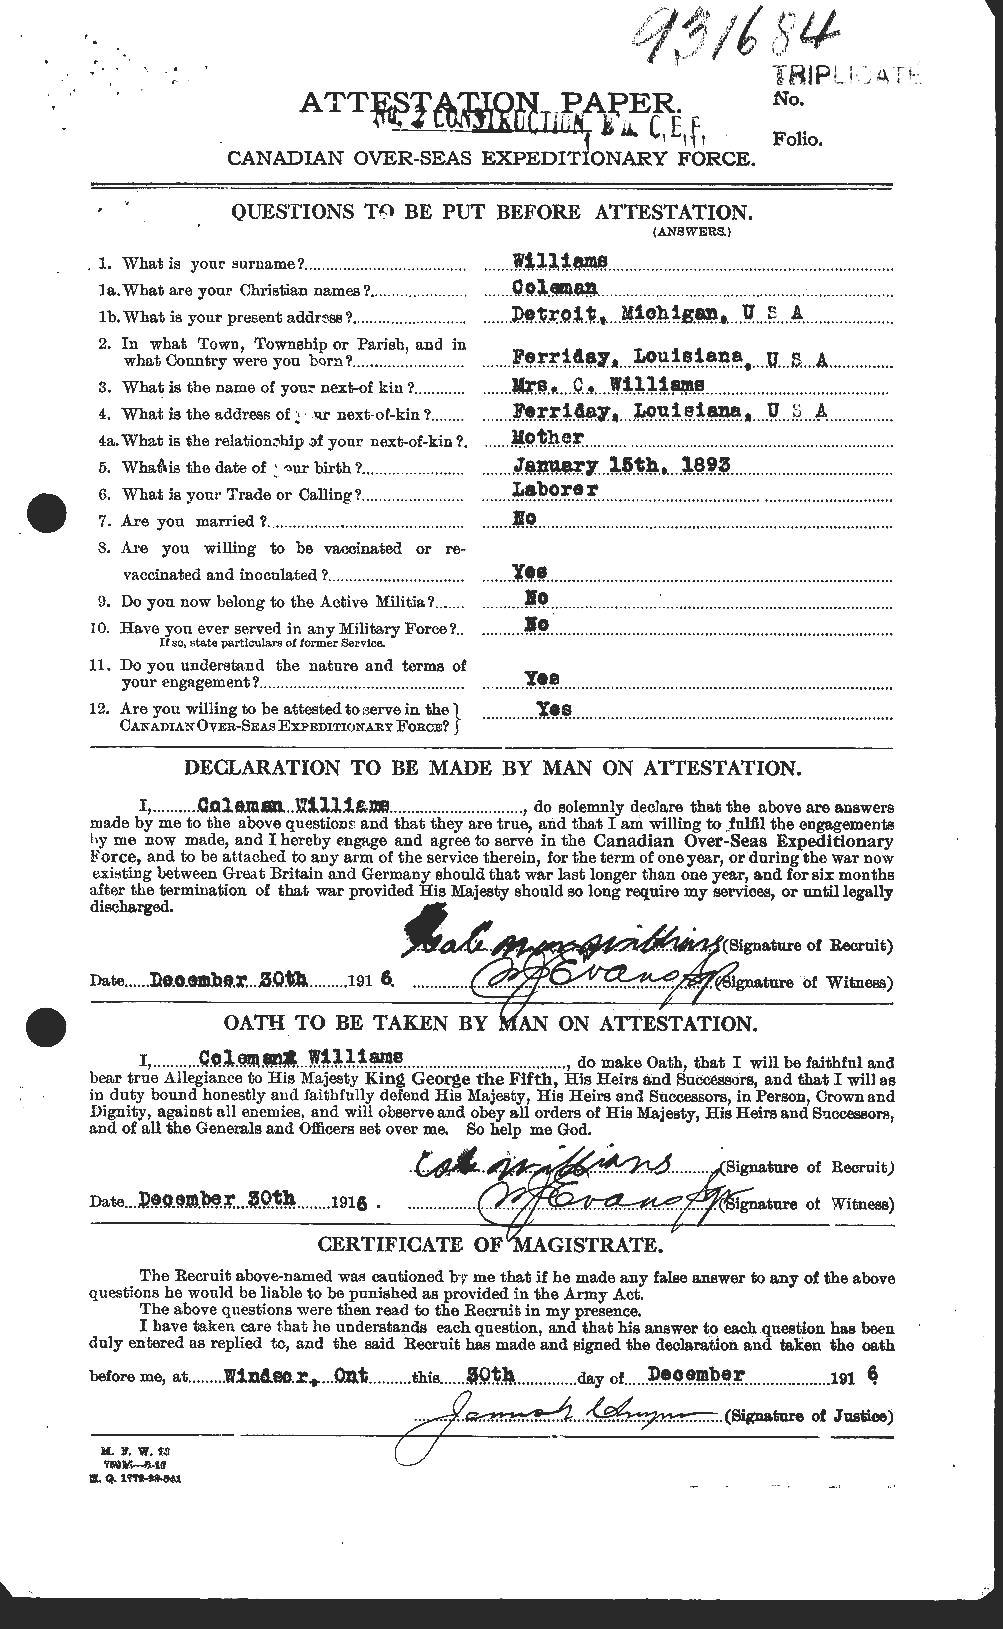 Dossiers du Personnel de la Première Guerre mondiale - CEC 674446a